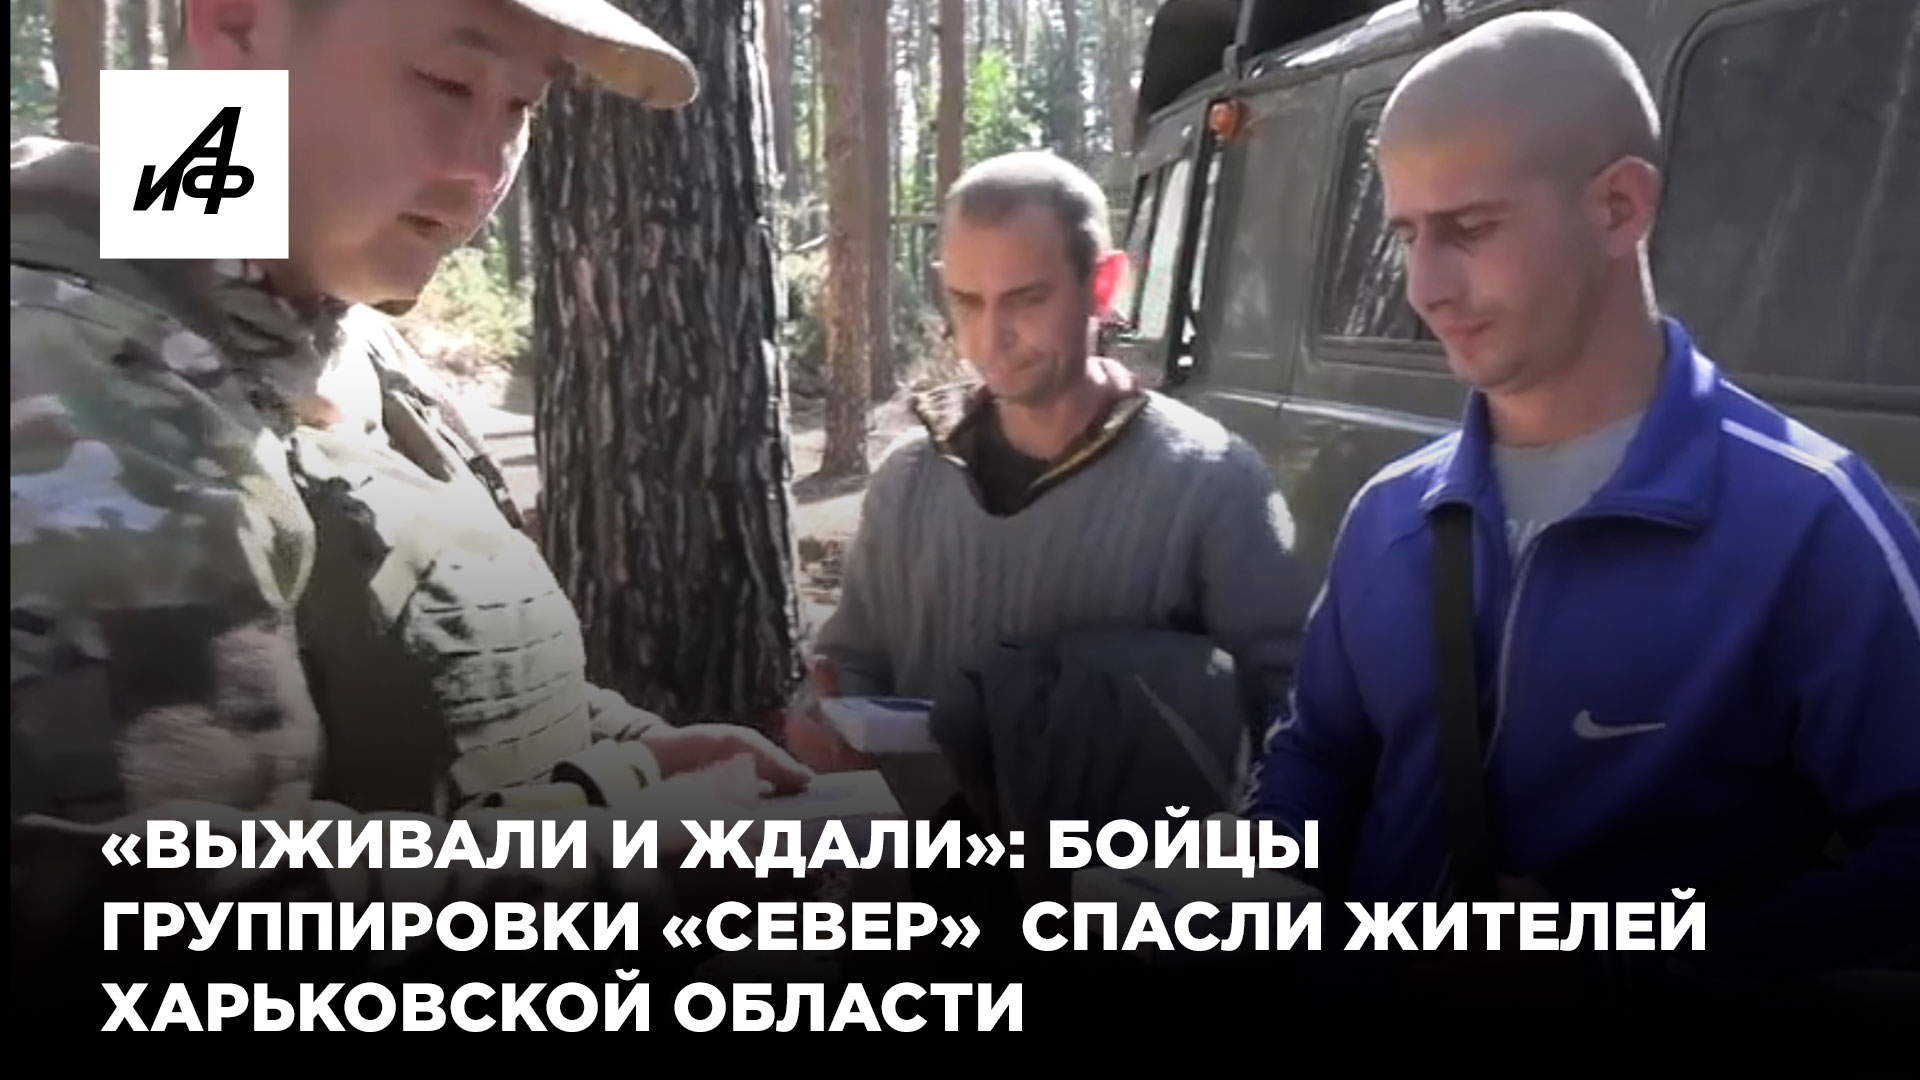 «Выживали и ждали»: бойцы группировки «Север» спасли жителей Харьковской области